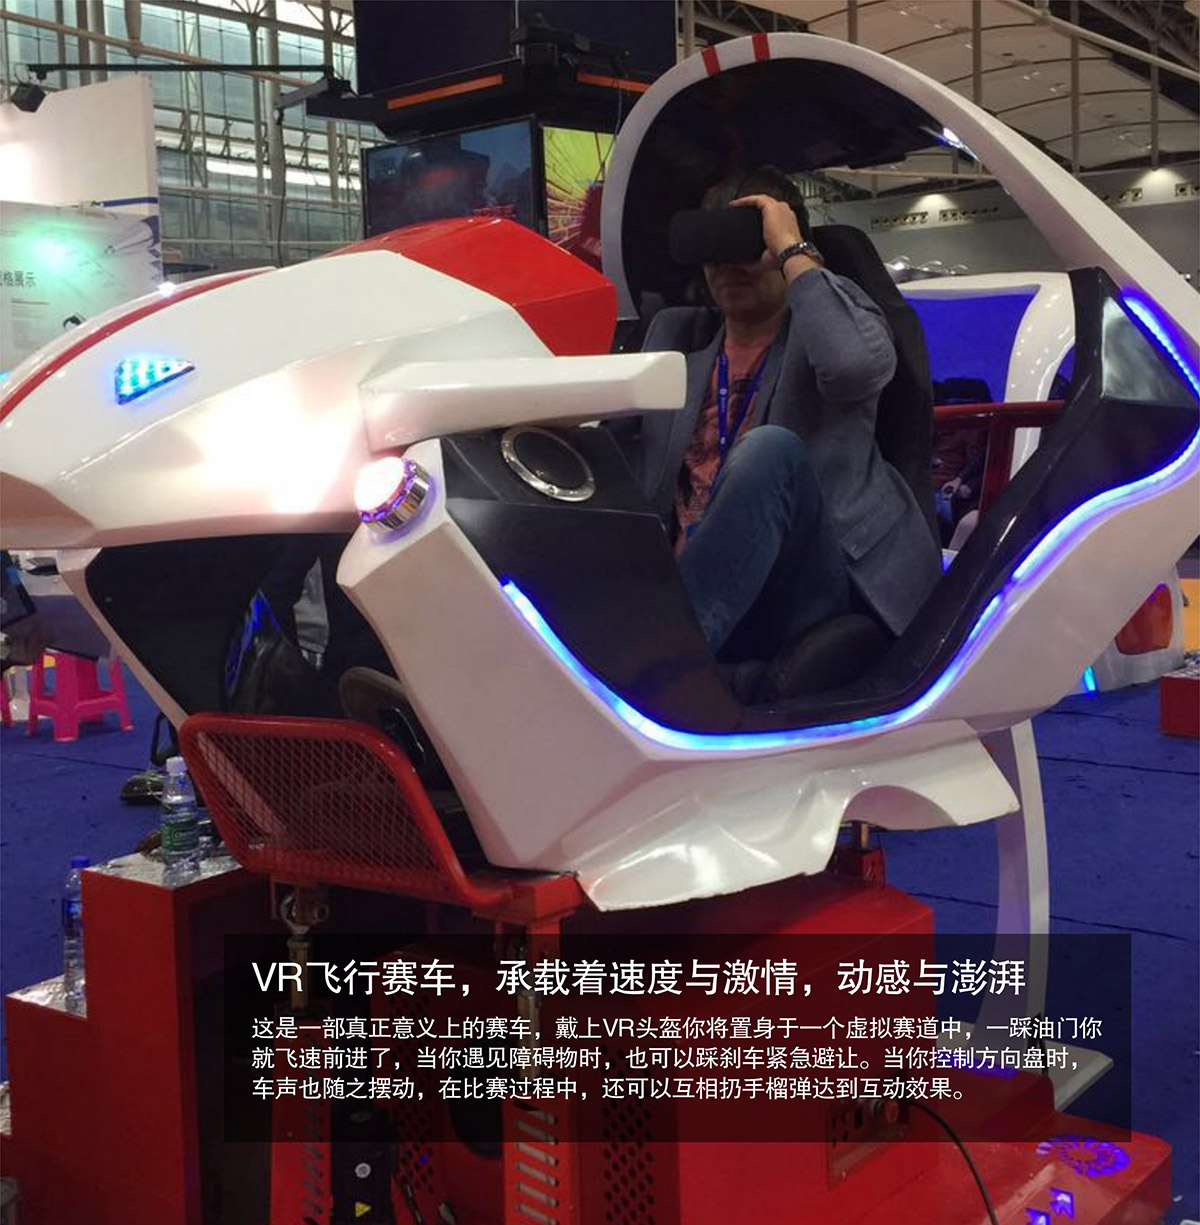 安全体验VR飞行虚拟赛车速度与激情动感澎湃.jpg